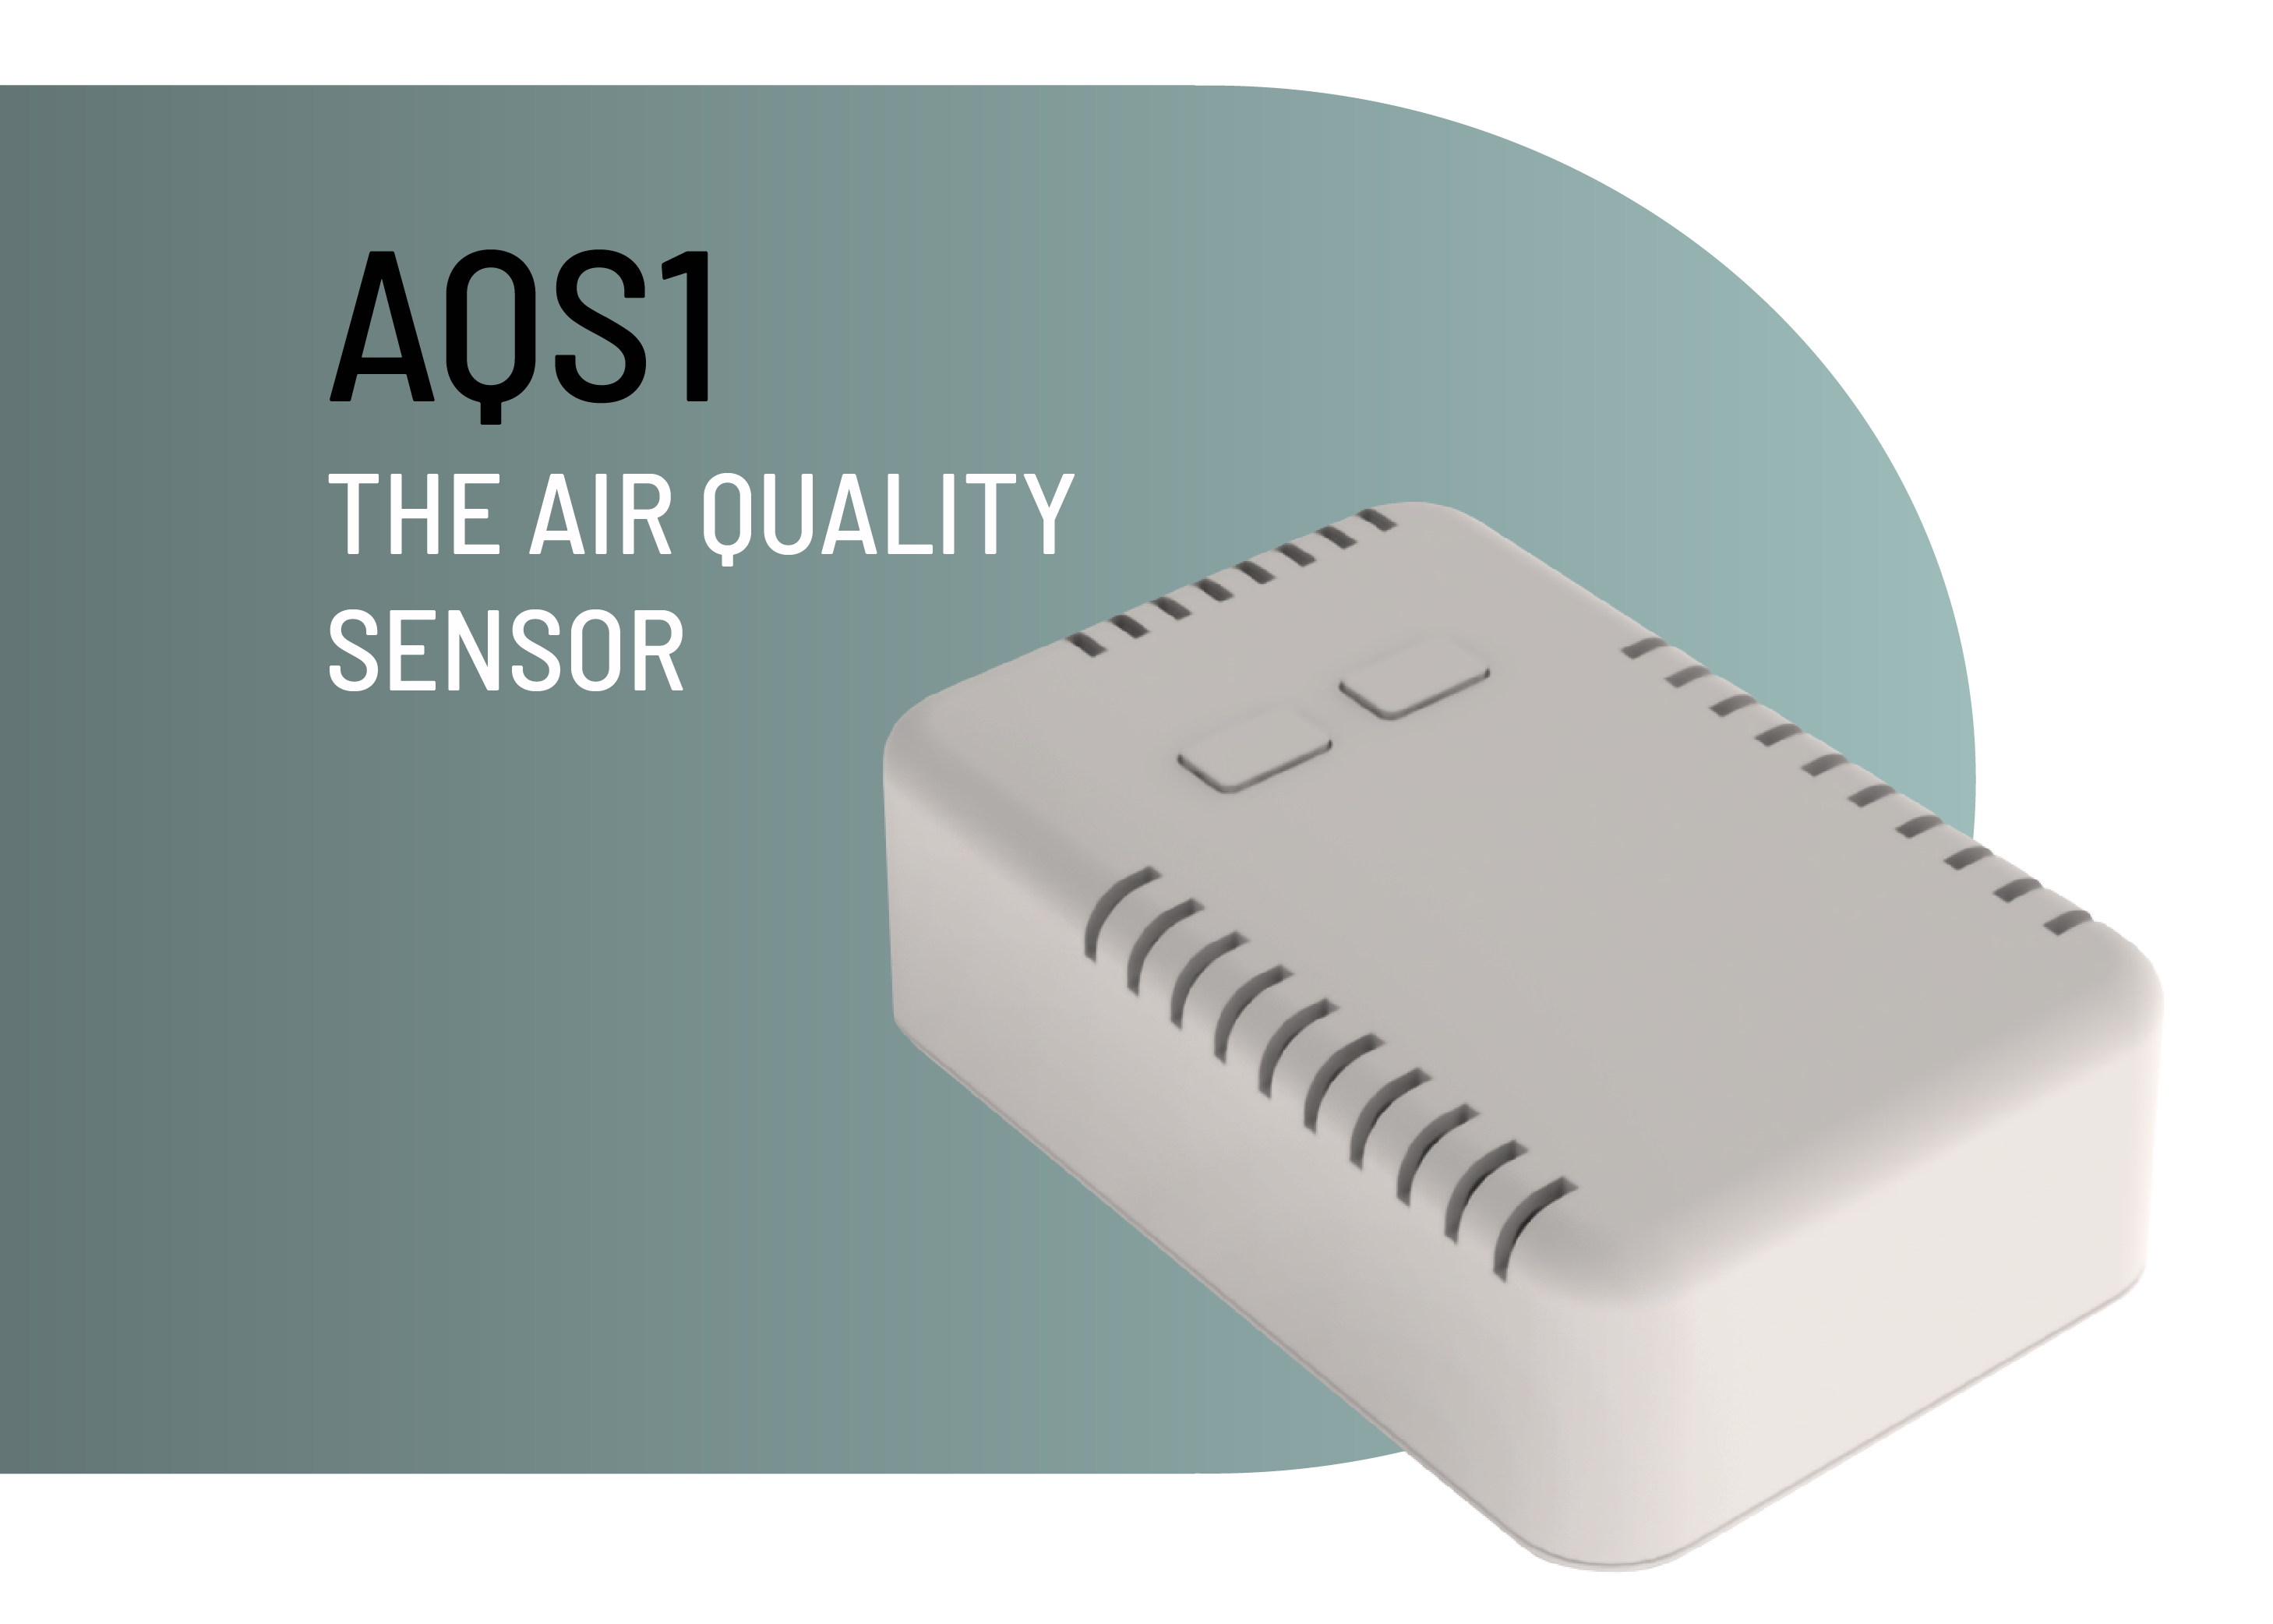 AQS1 AIR QUALITY SENSOR product